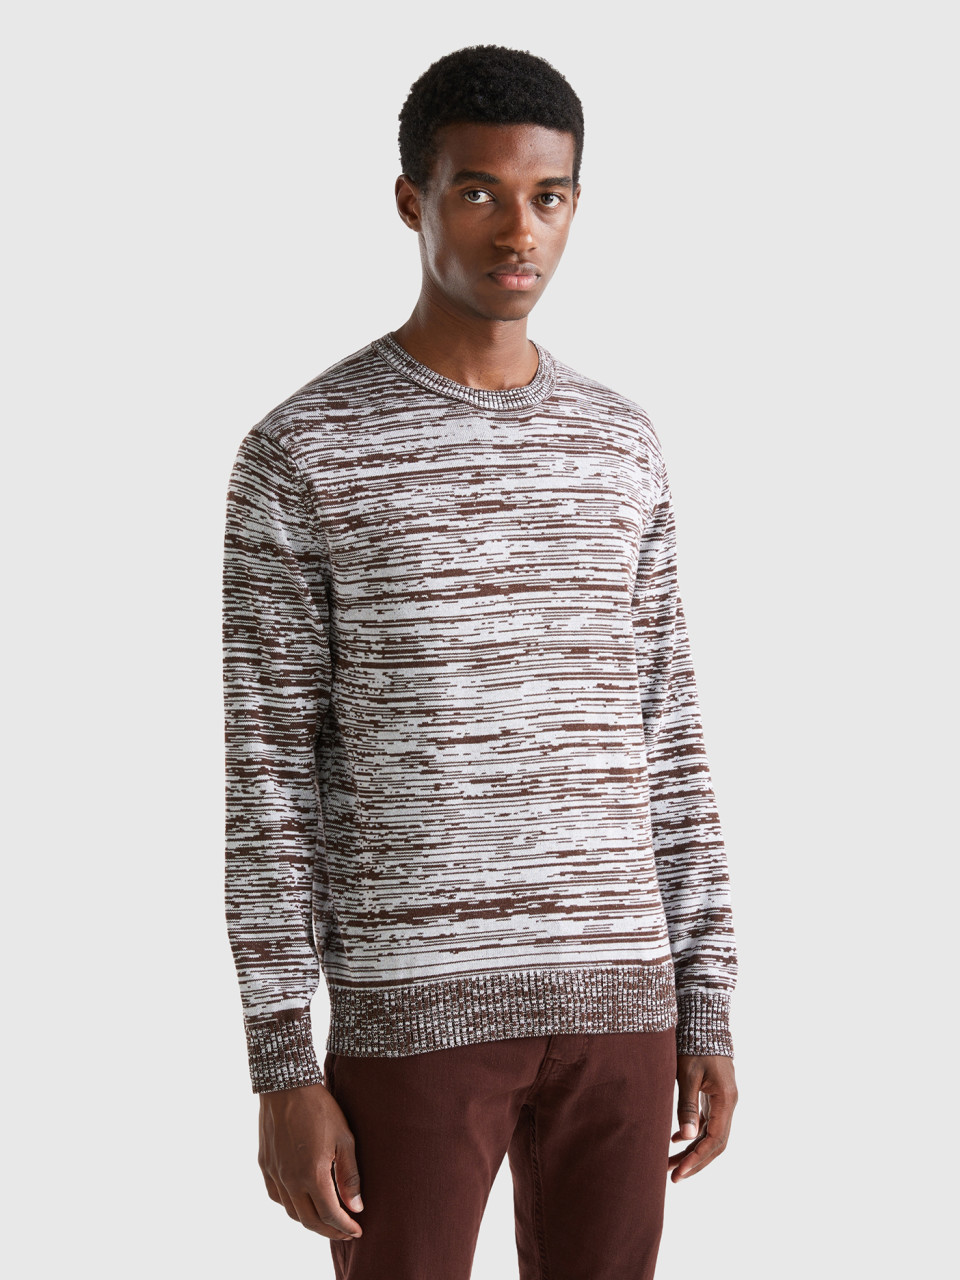 Benetton, Sweater With Striped Motif, Dark Brown, Men